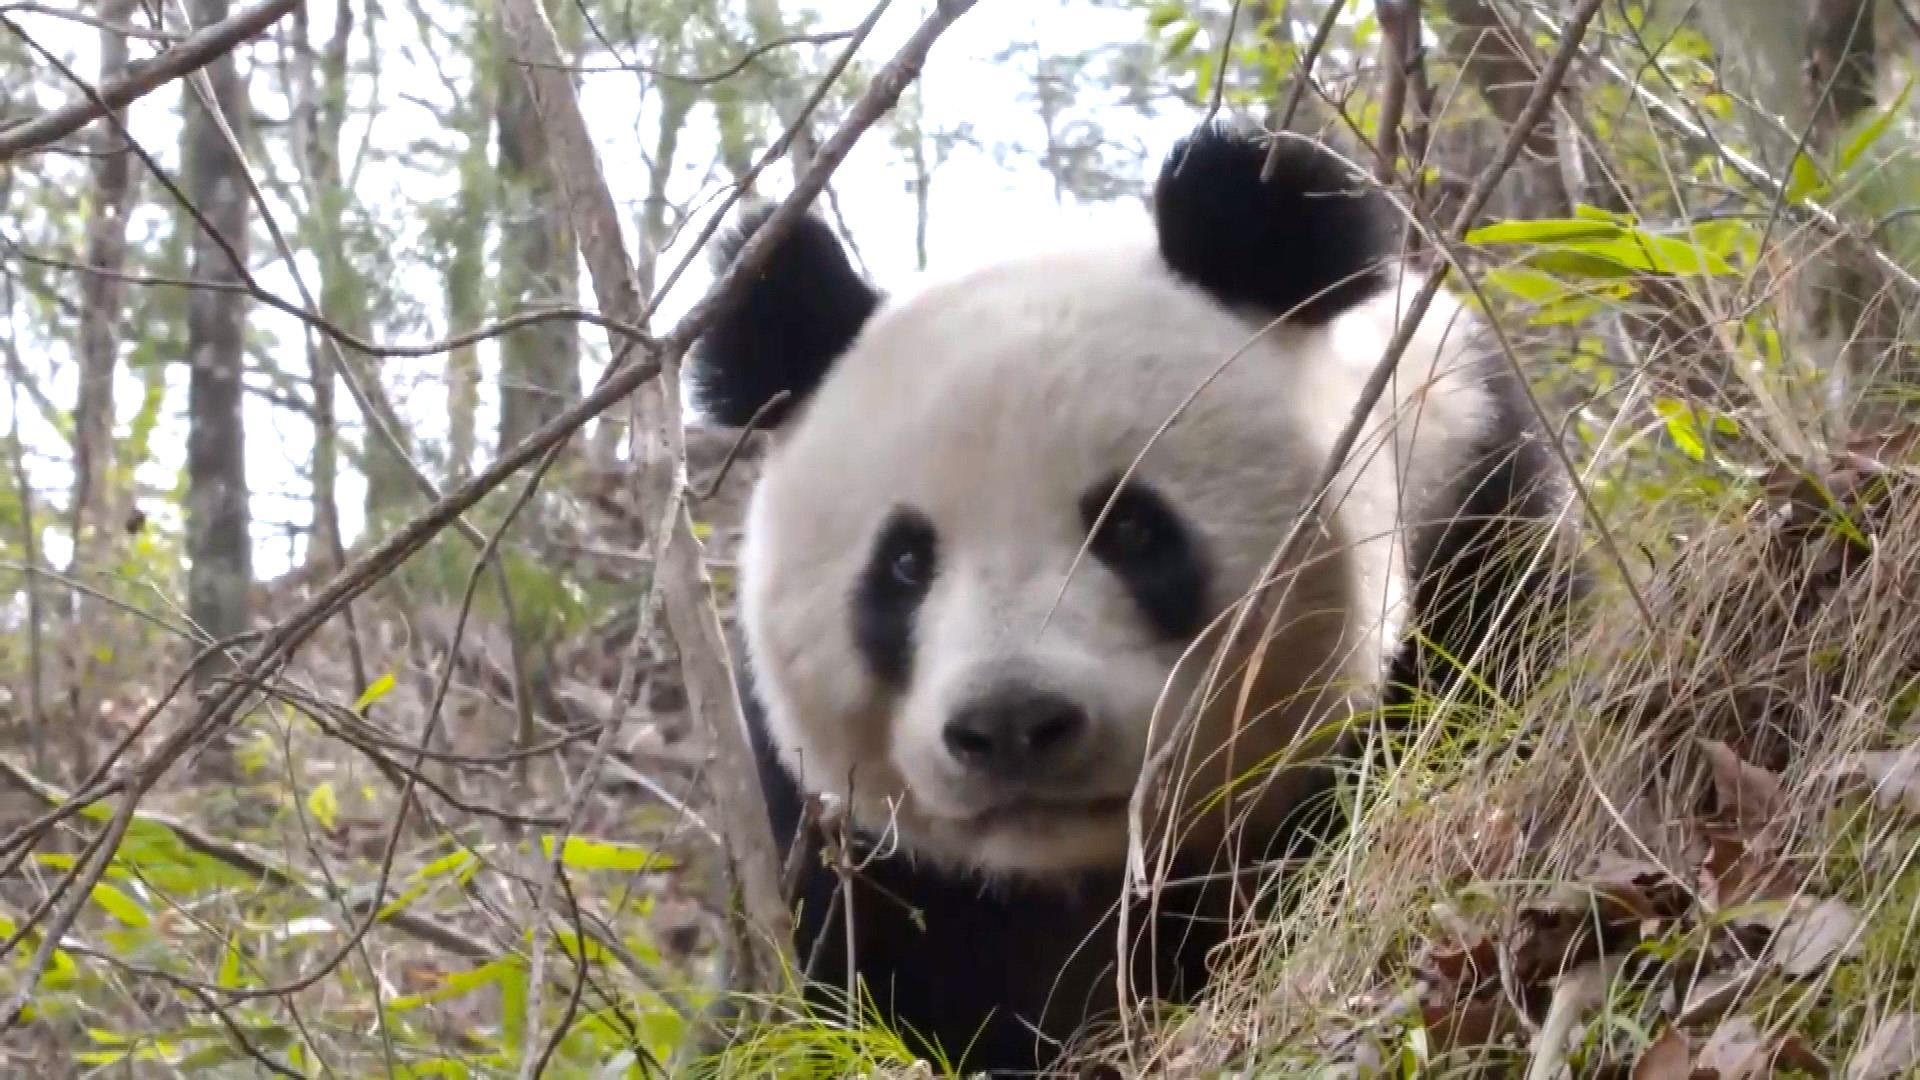 Rare video captures giant panda, cub in wild